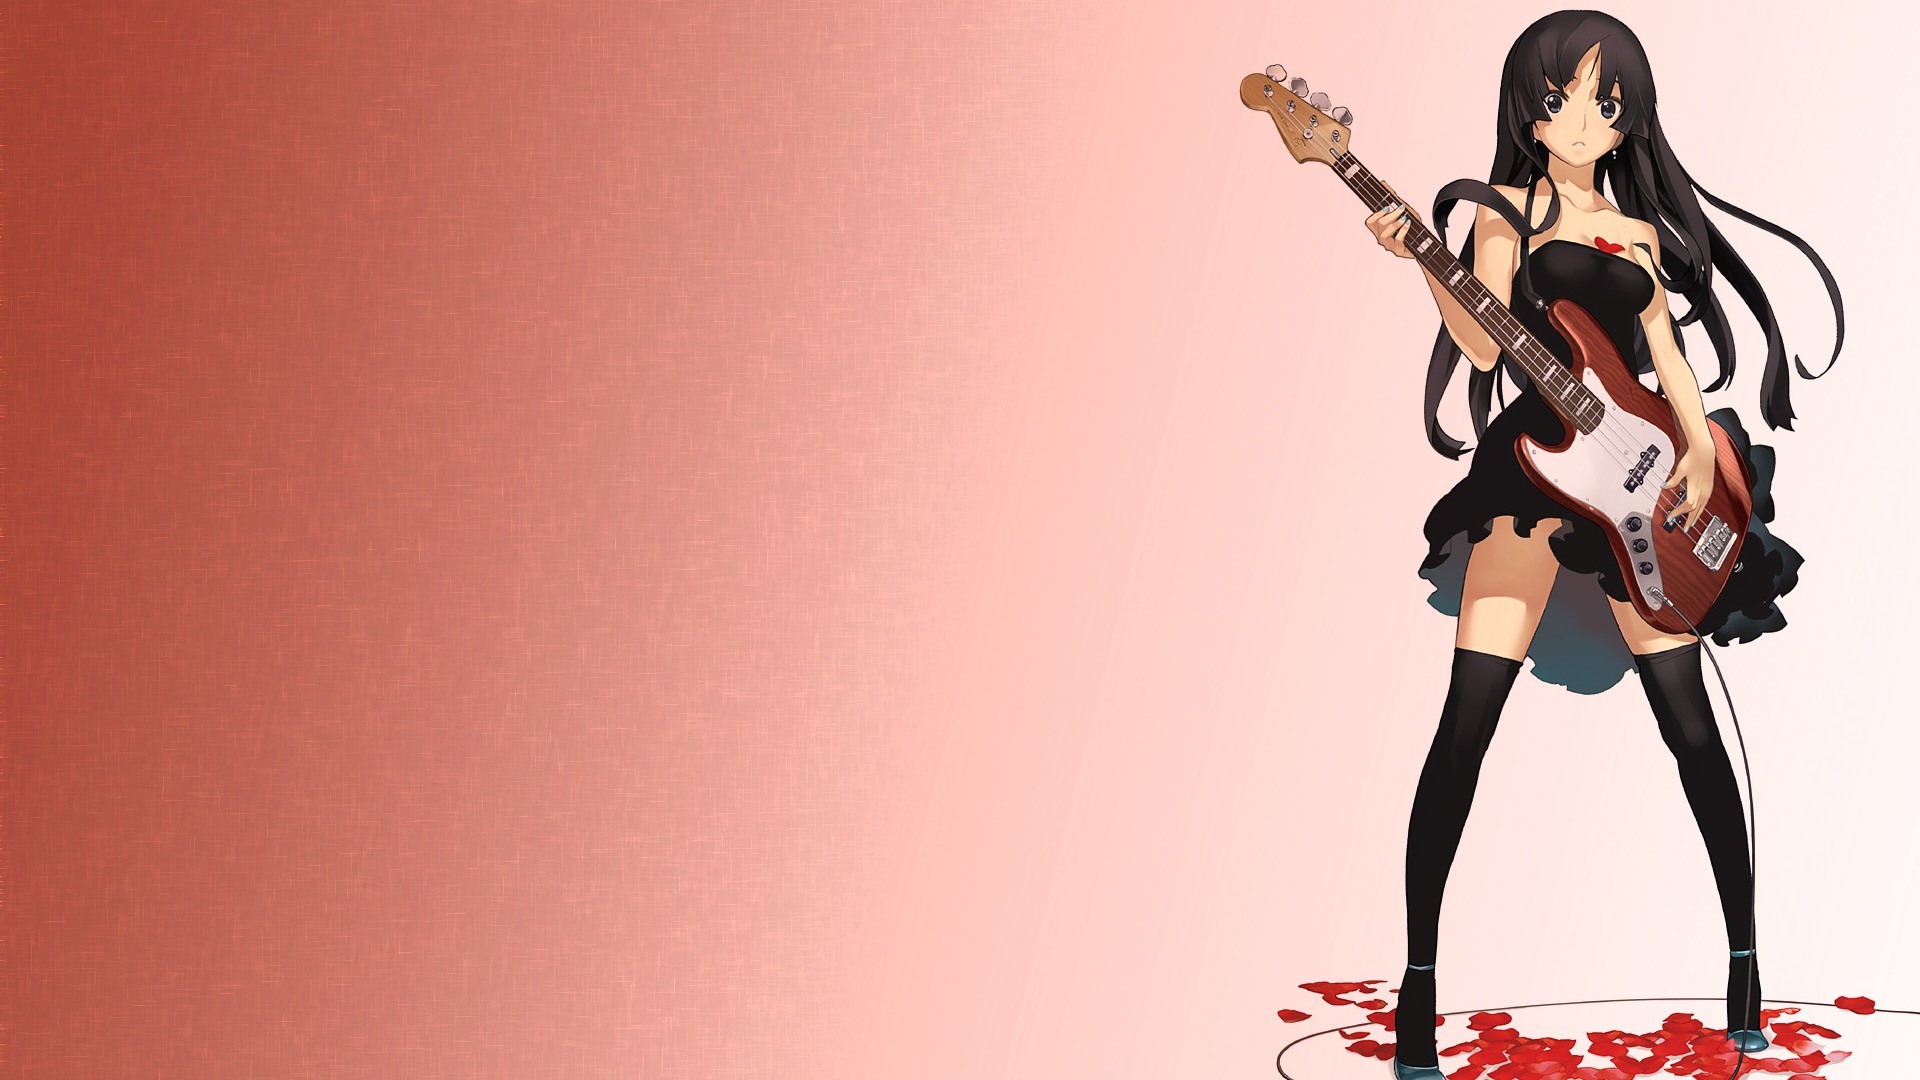 Anime Girls Anime K ON Akiyama Mio Guitar Knee Highs Socks Long Hair Dress Brunette 1920x1080